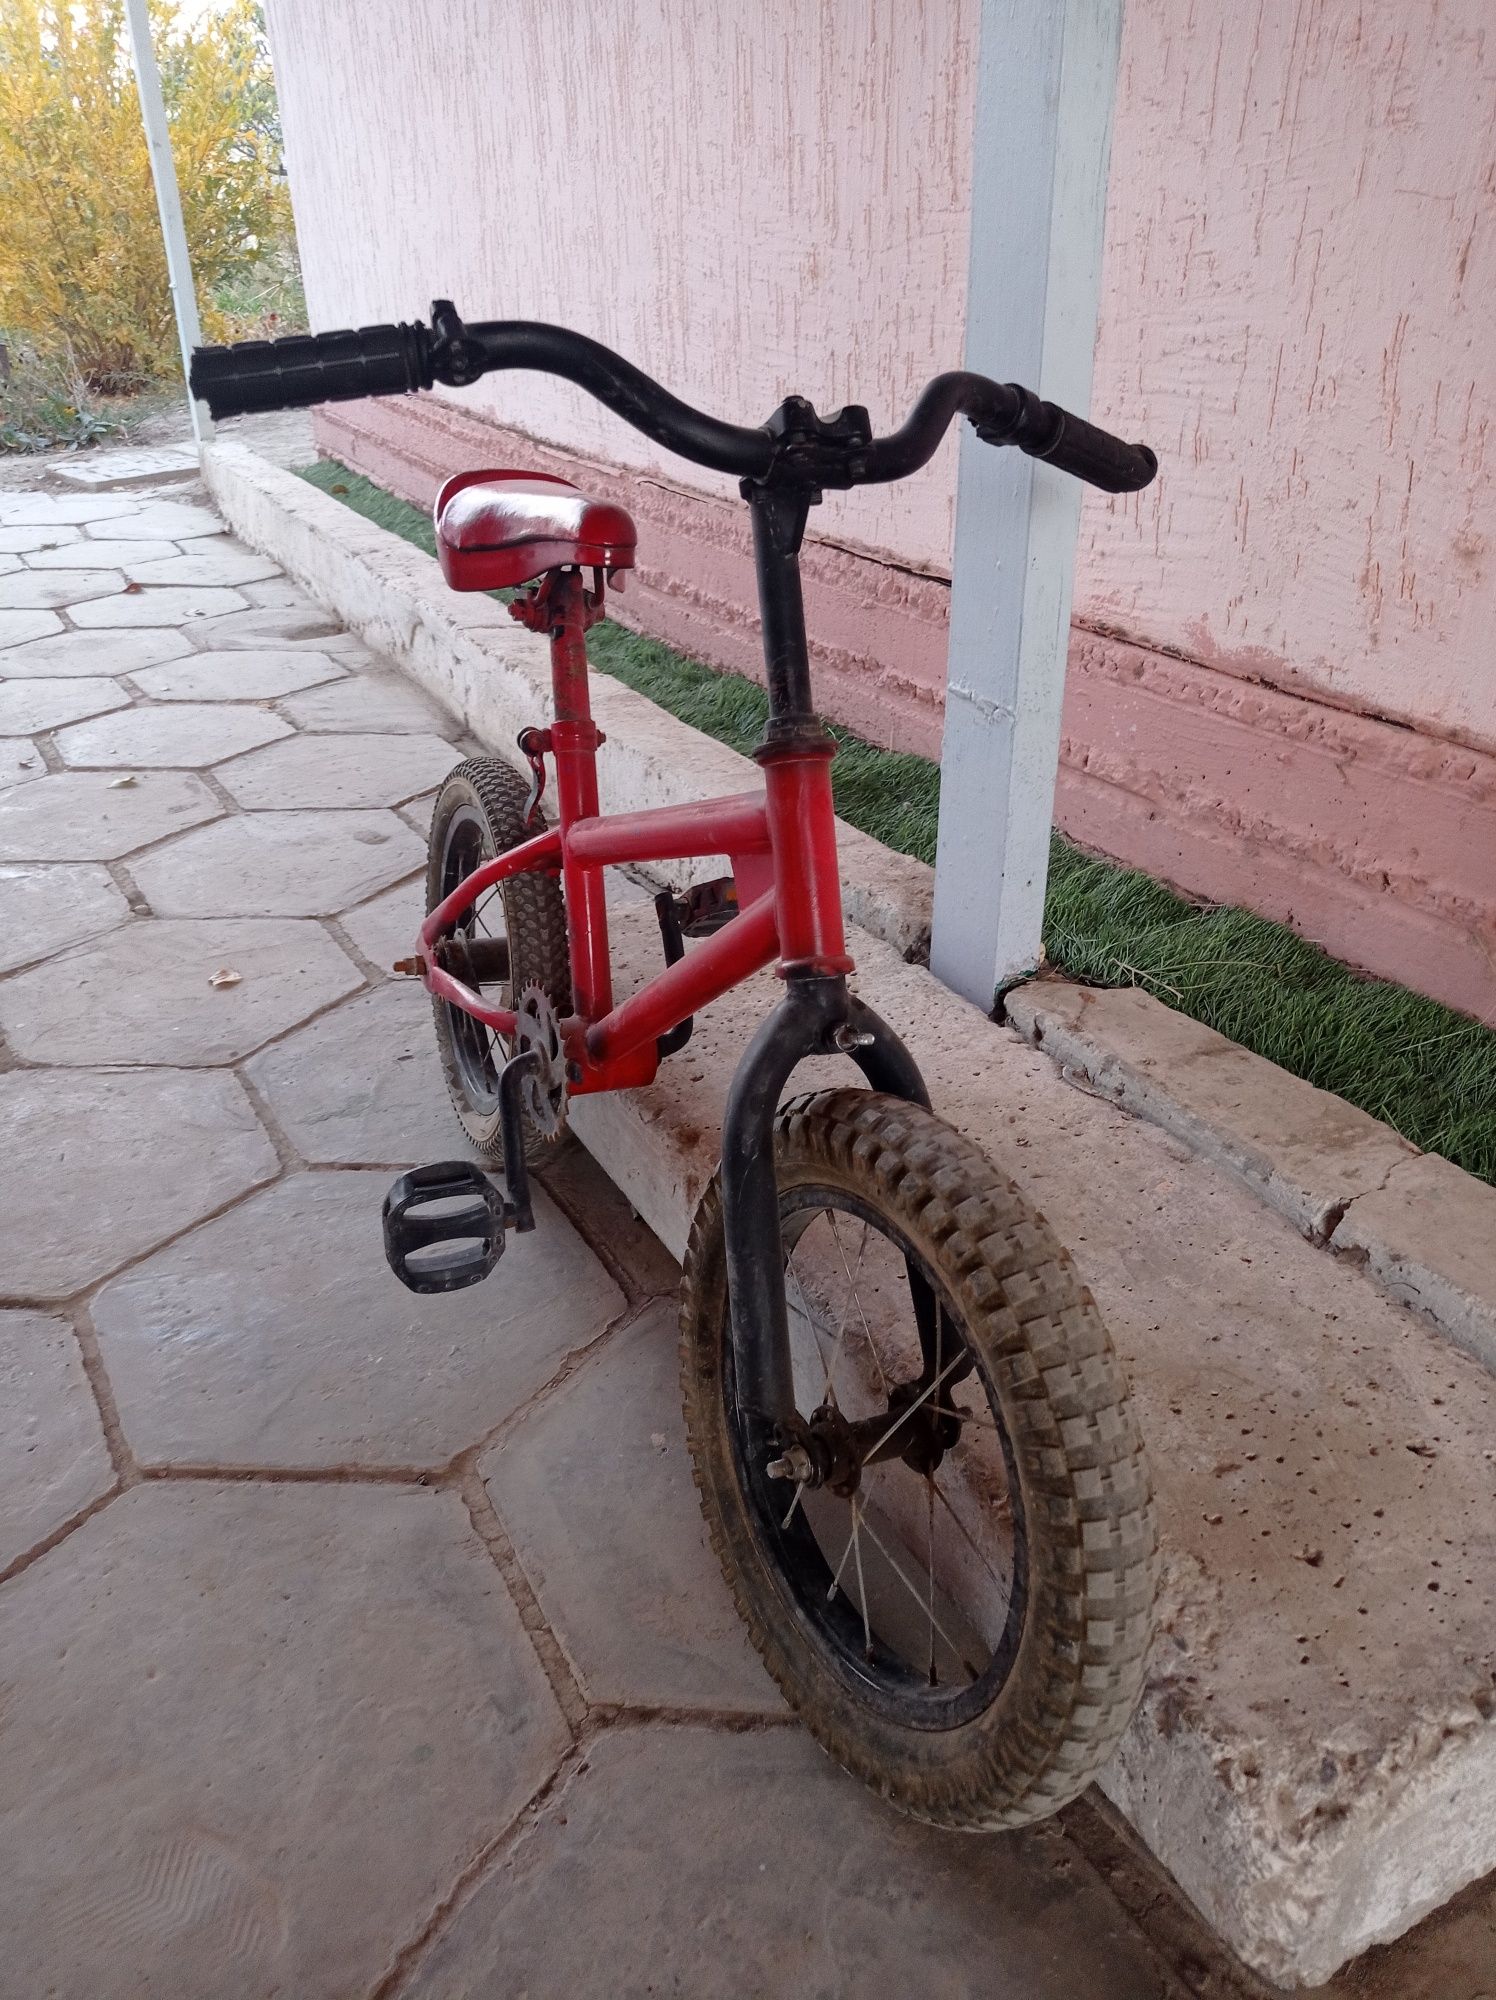 Велосипед BMX детский